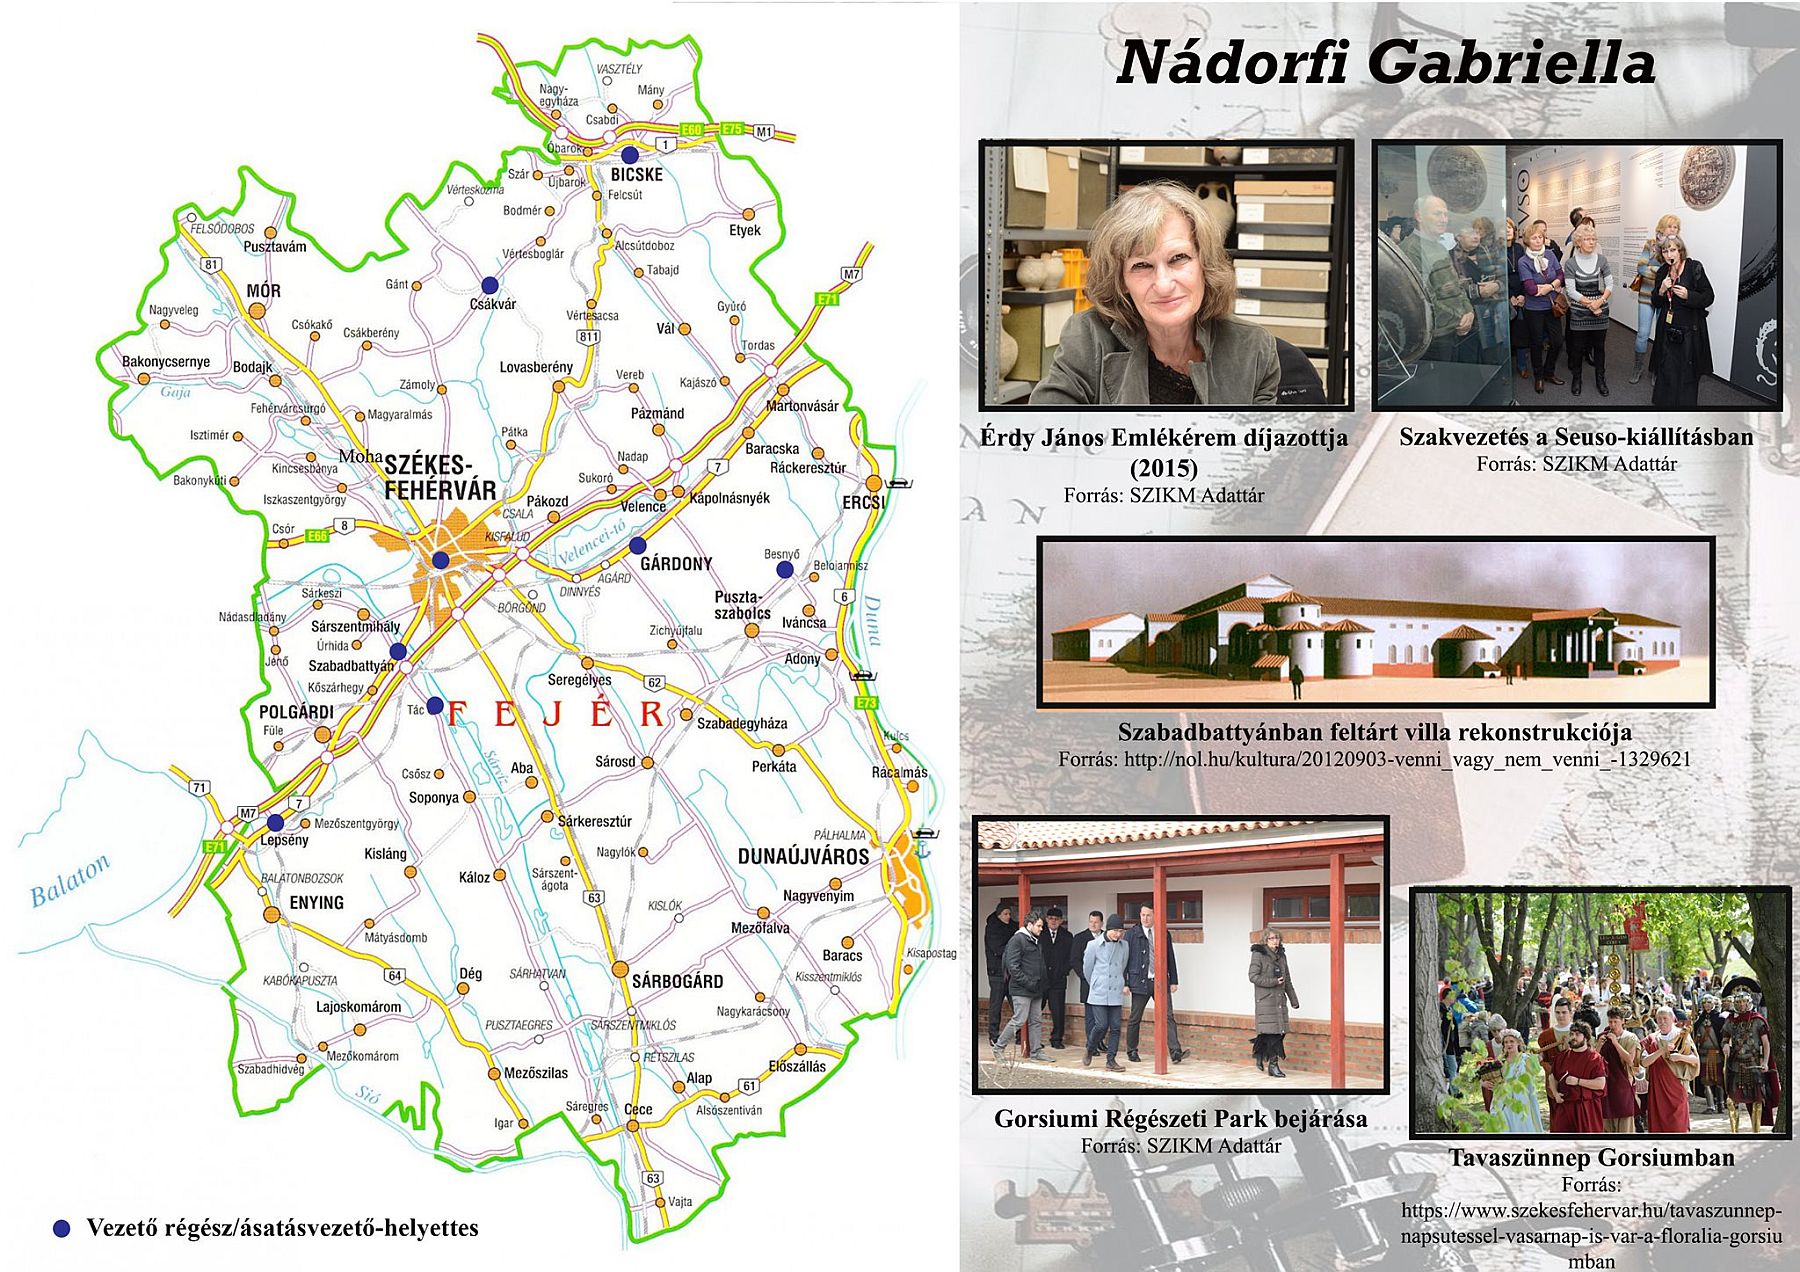 A Nők Történelmének hónapja - Nádorfi Gabriella munkásságára emlékeznek